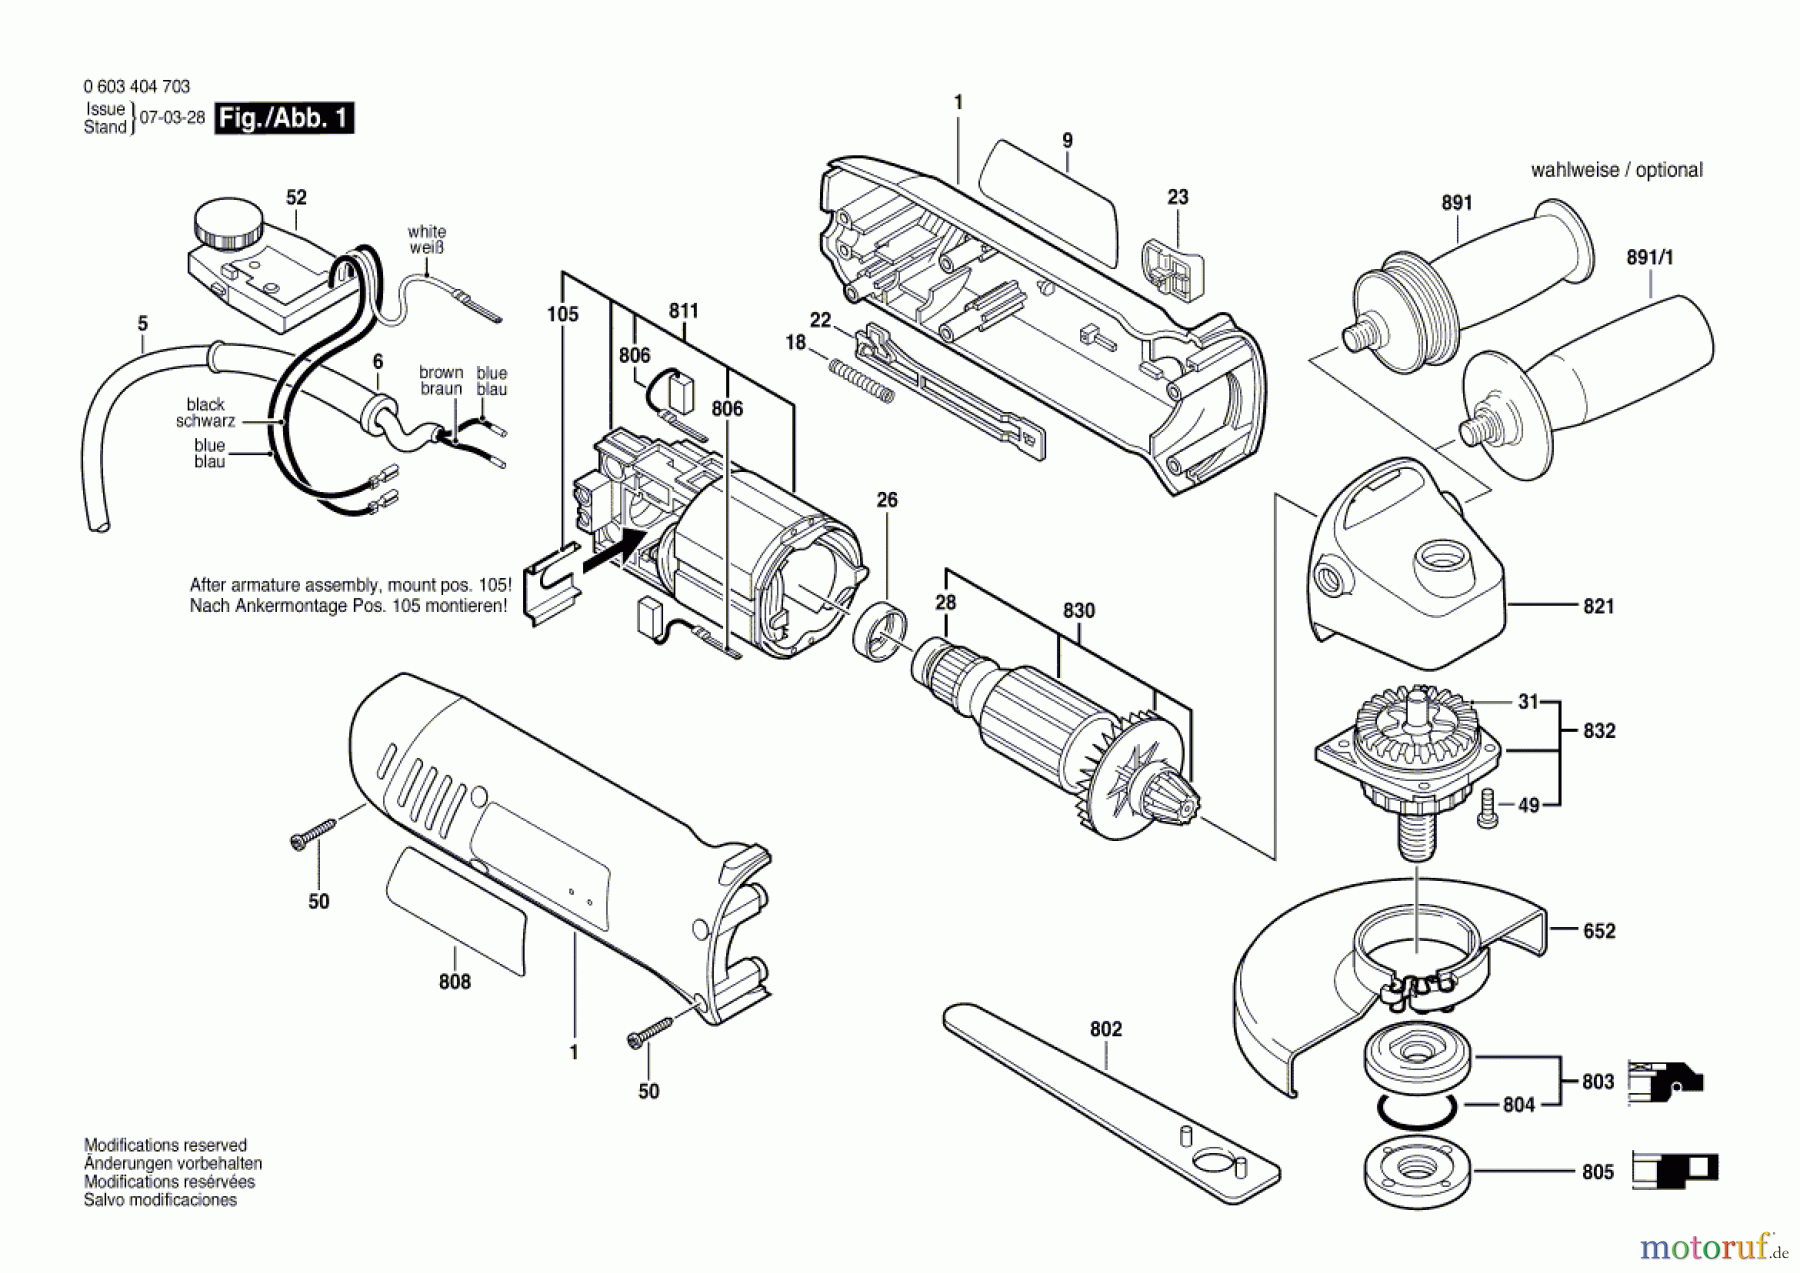  Bosch Werkzeug Winkelschleifer PWS 9-125 CE Seite 1